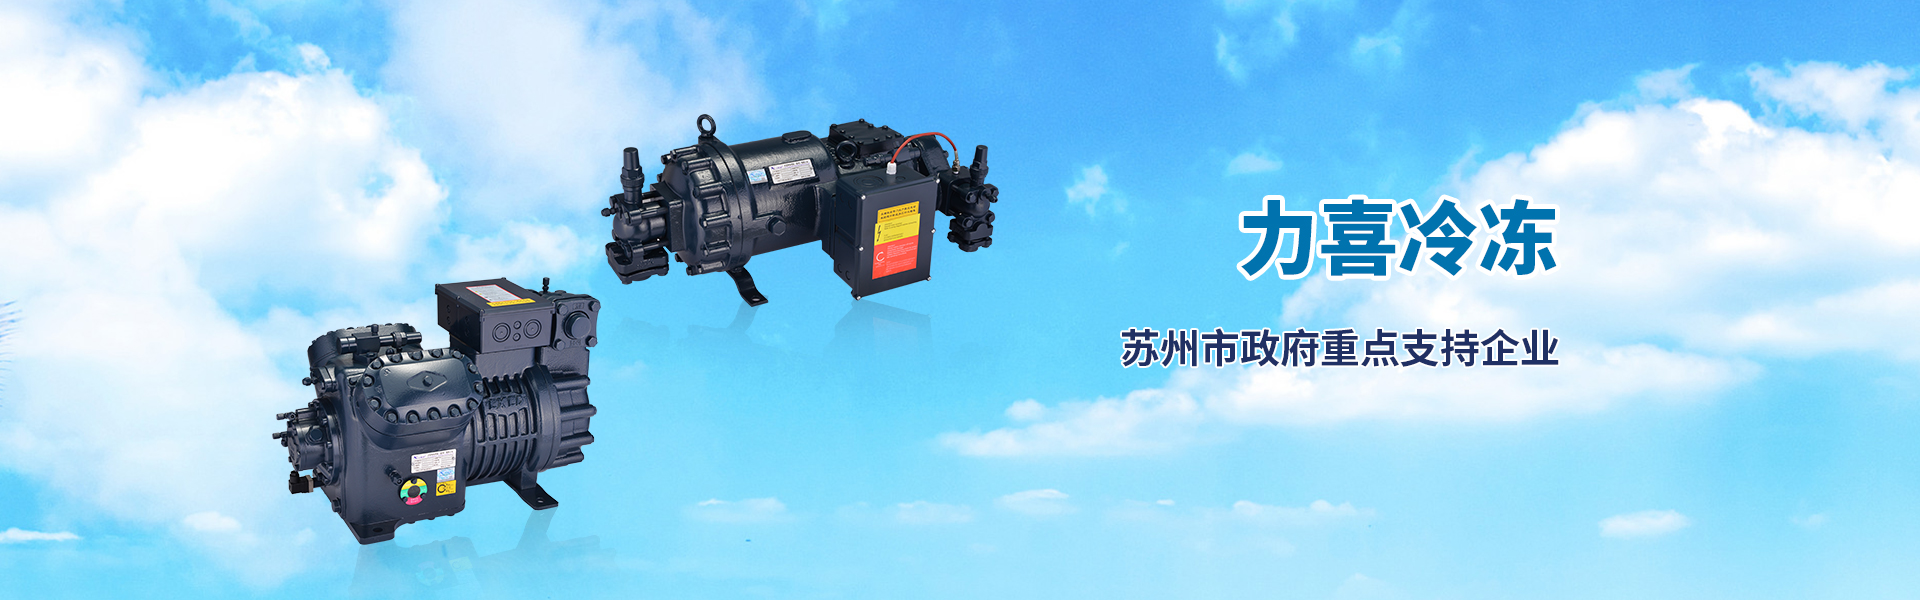 bwin·必赢(中国)唯一官方网站_image3667